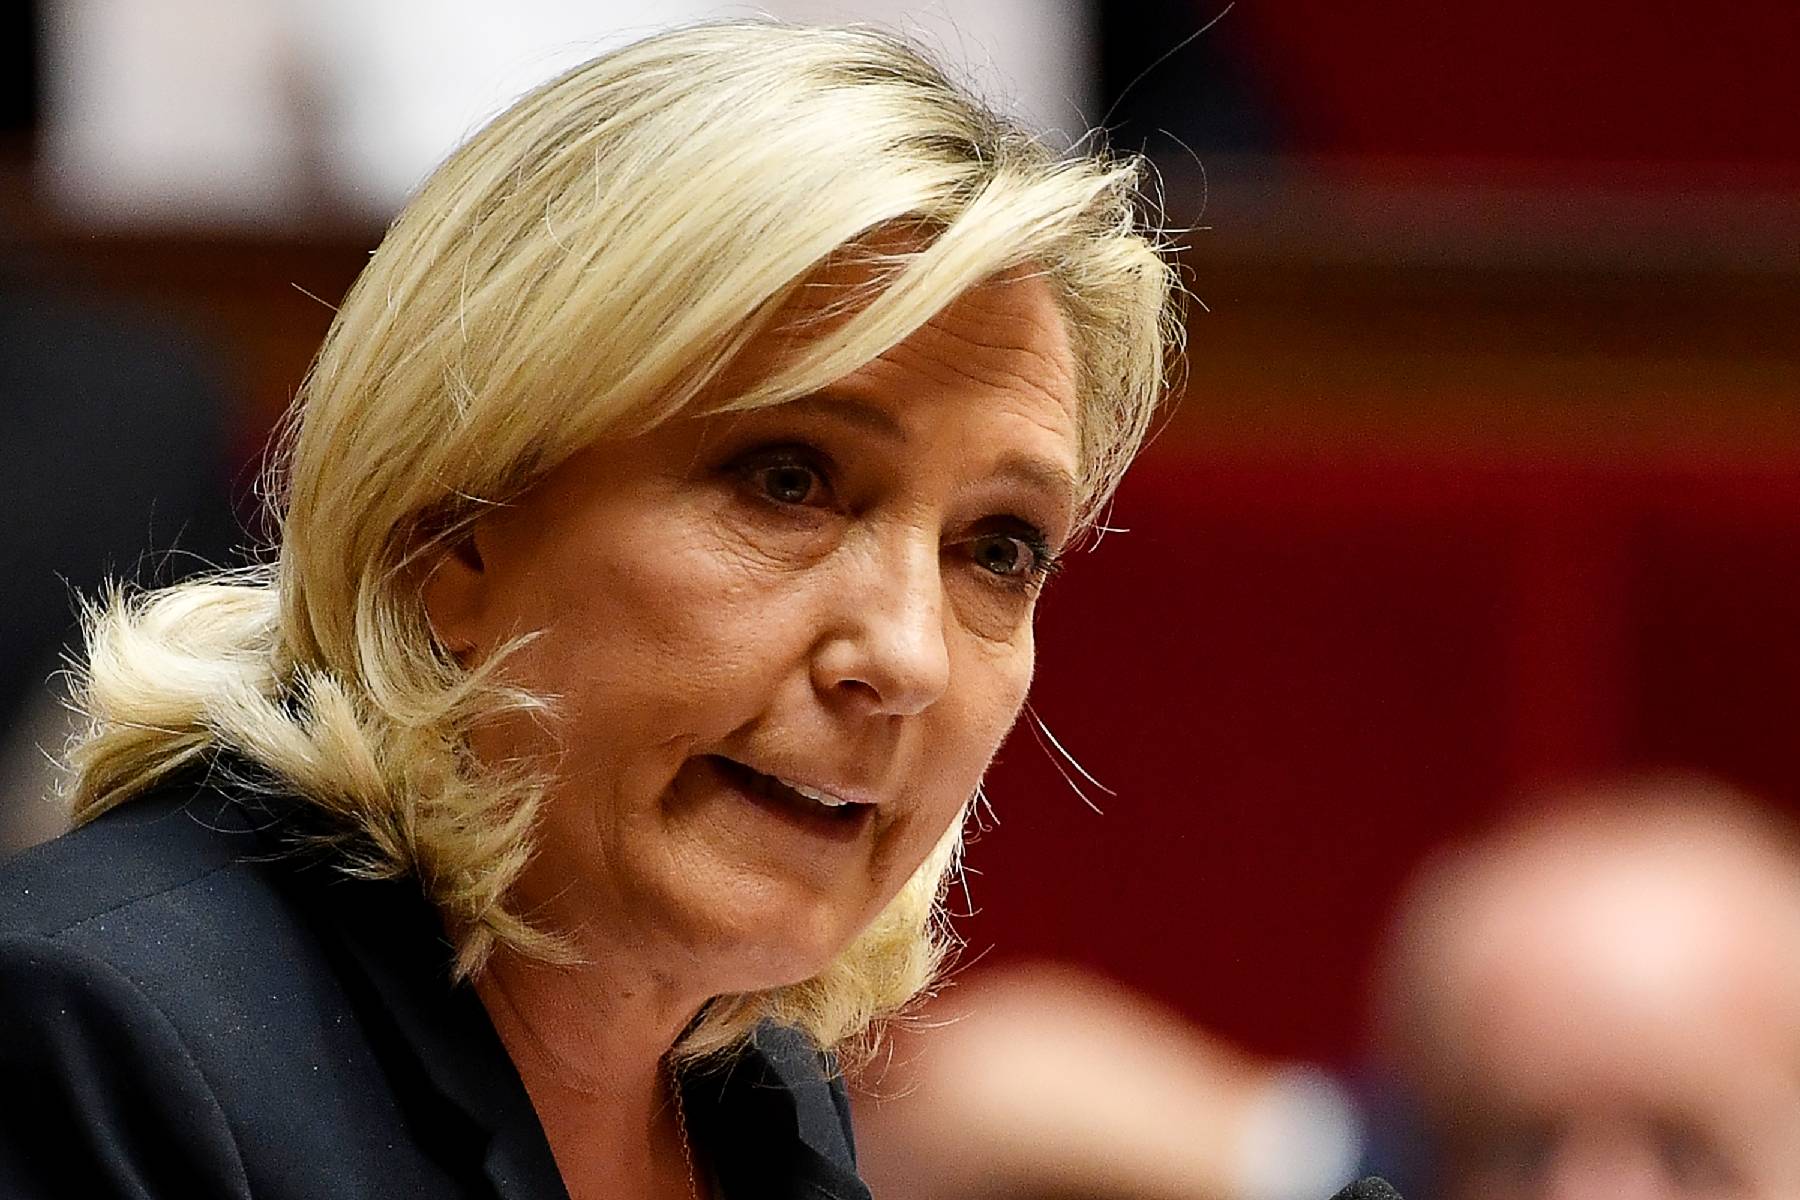 Retraite à 64 ans : Marine Le Pen entend 